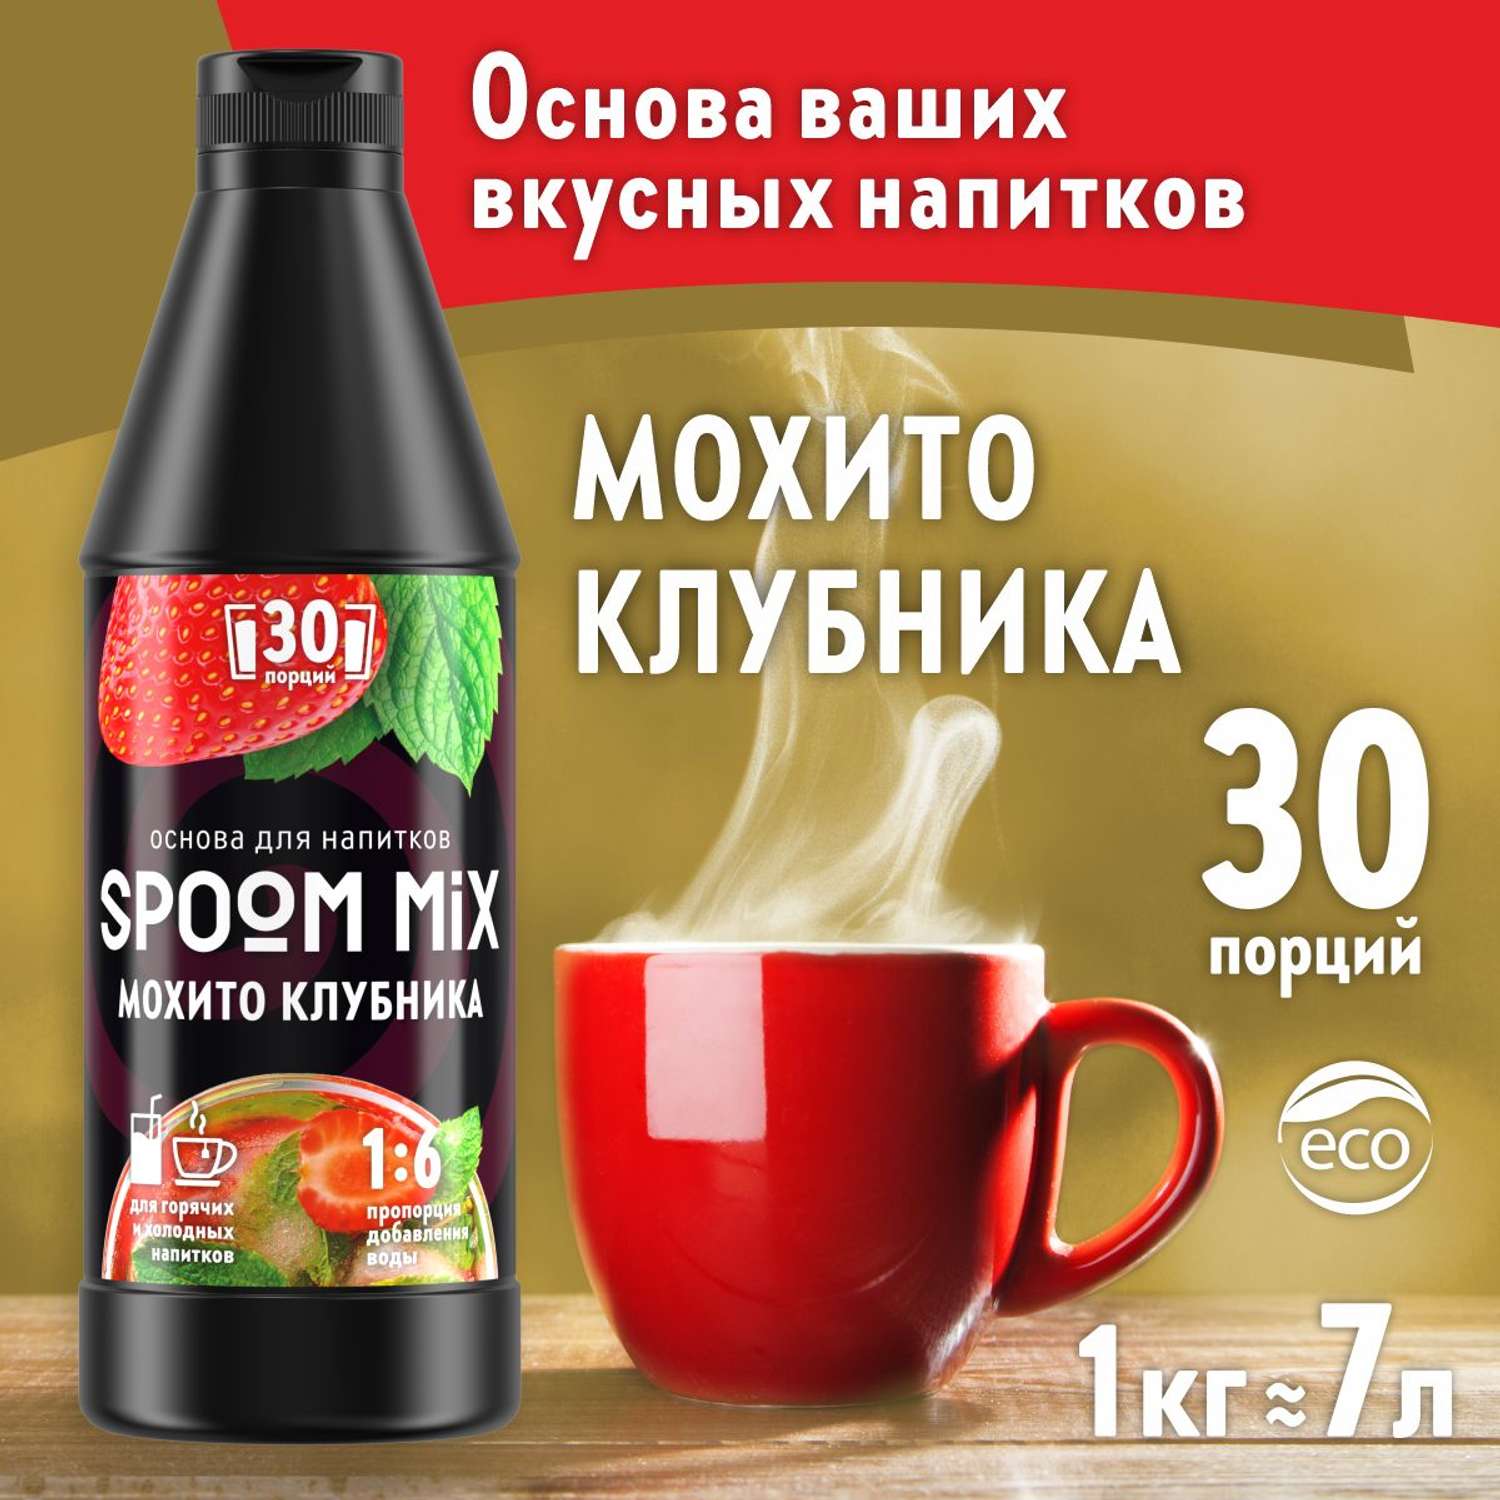 Основа для напитков SPOOM MIX Мохито клубника 1 кг - фото 1